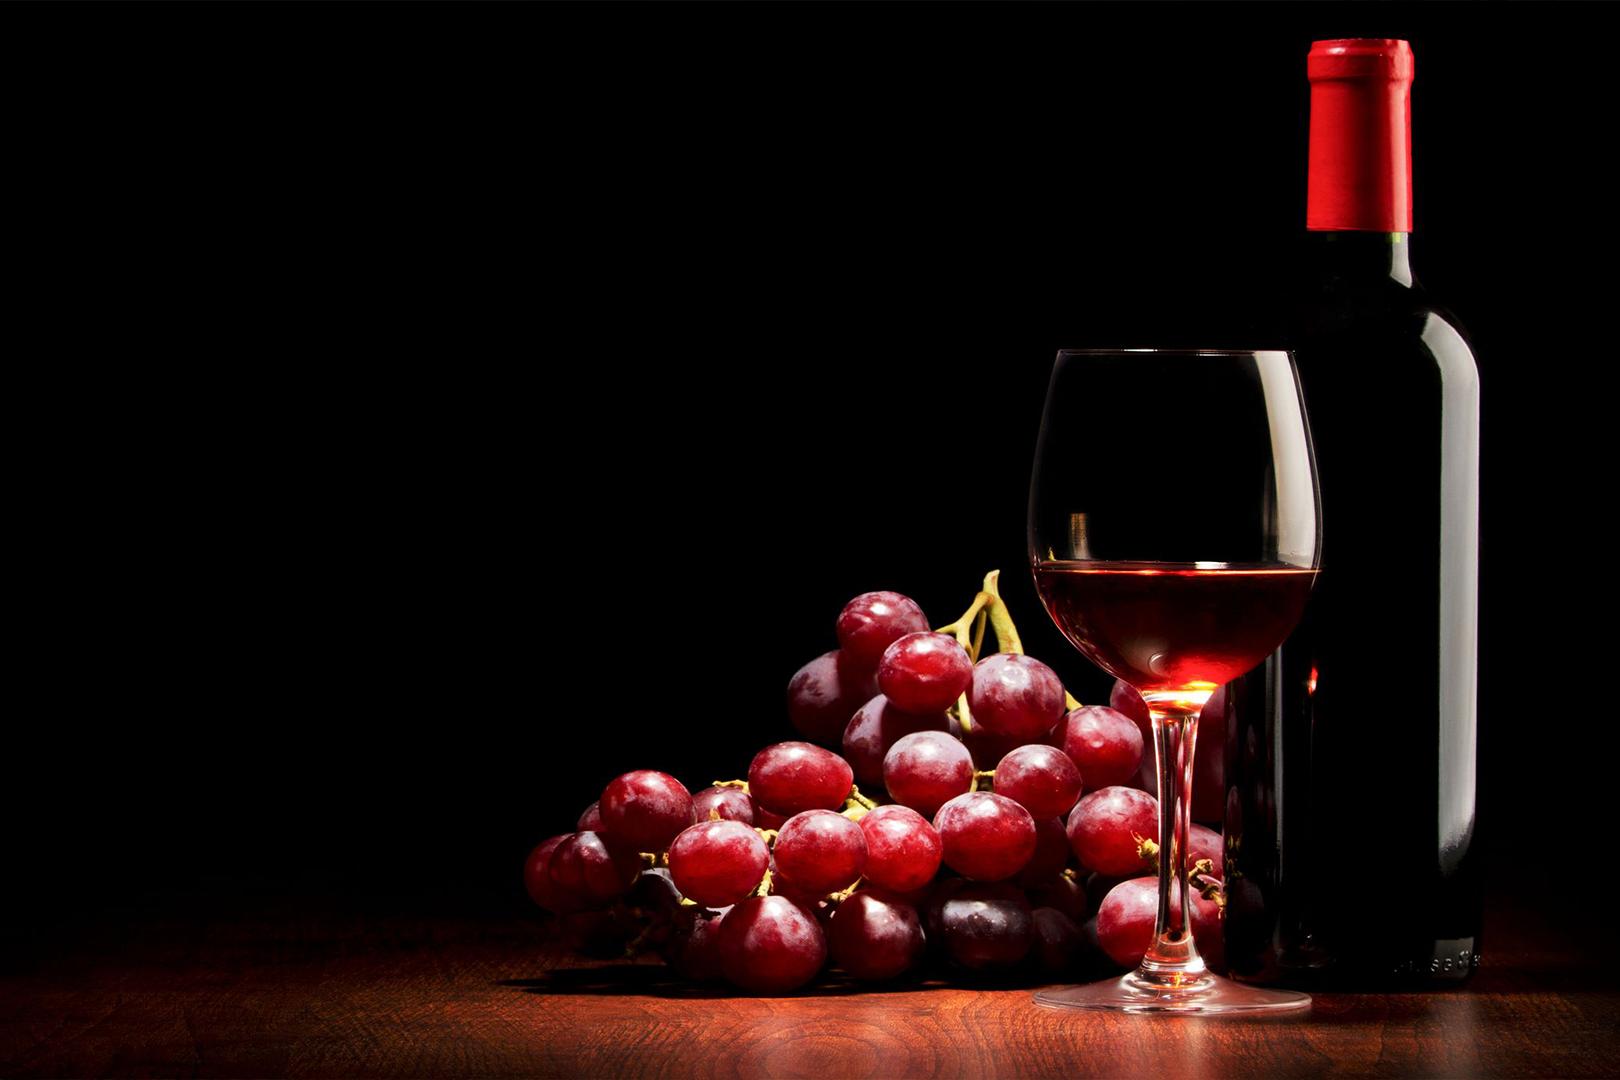 唐三镜黄丽娜: 家庭自制葡萄酒的酿造方法详细介绍